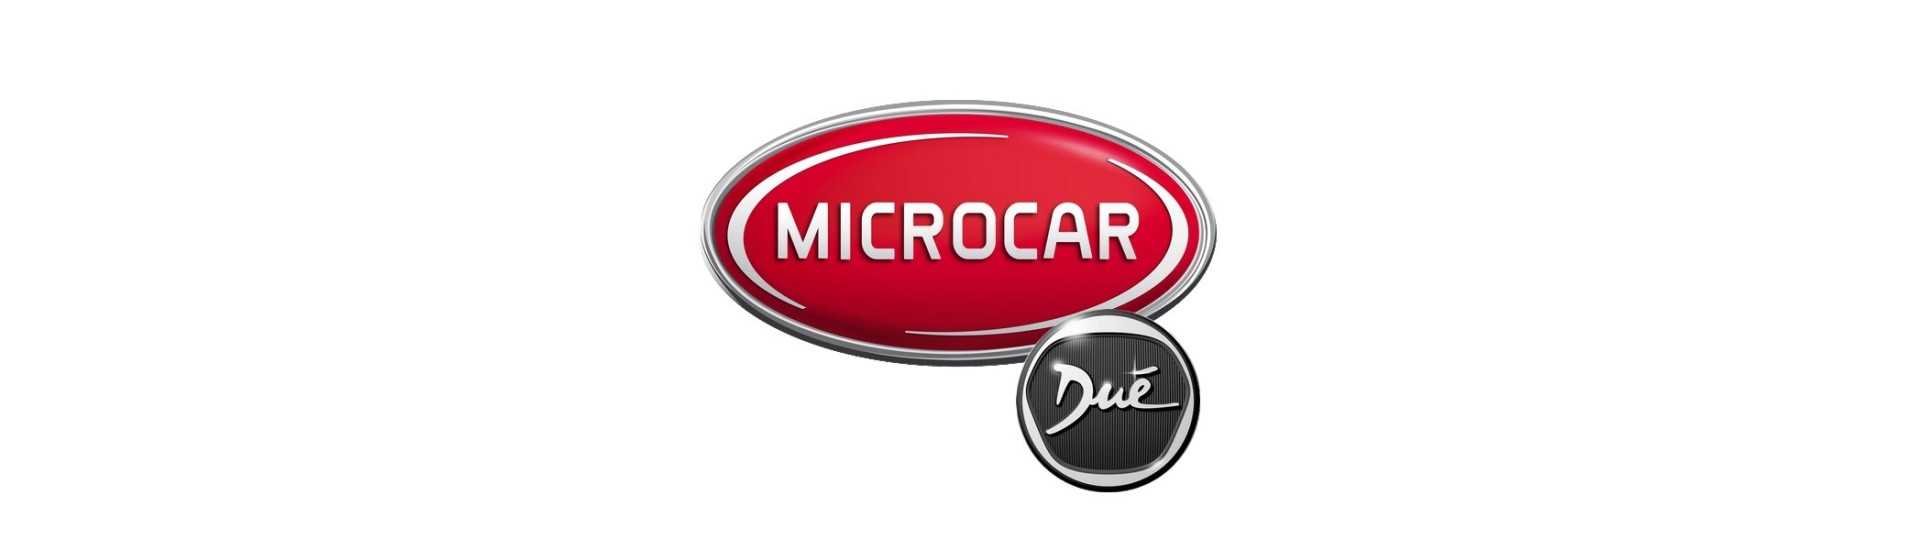 Centro de ruedas al mejor precio para coche sin permiso Microcar Dué